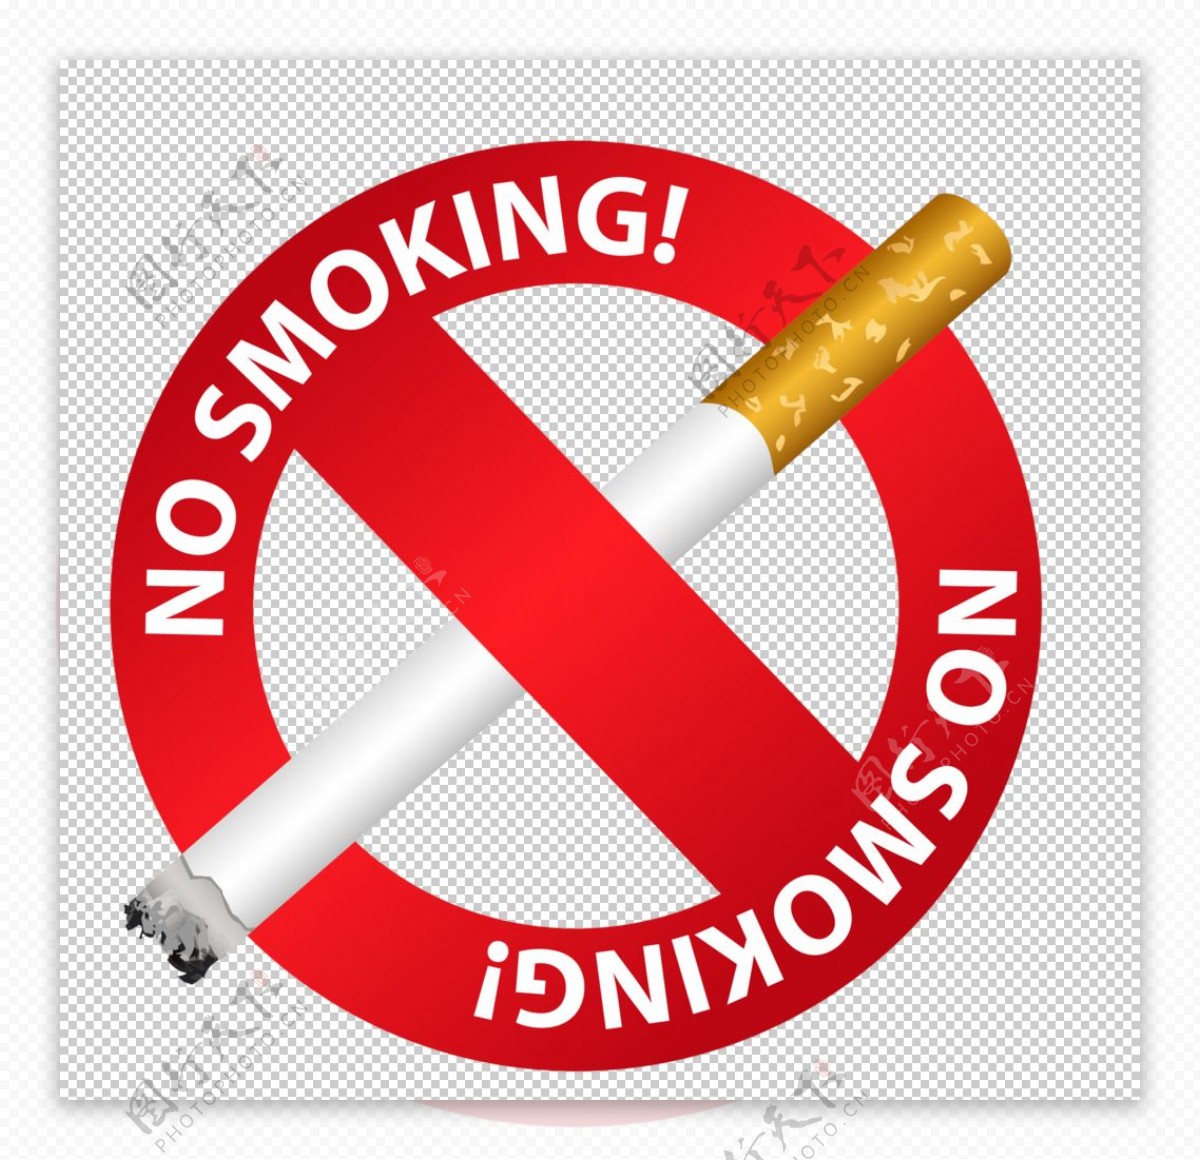 请勿吸烟抽烟安全标志图片素材免费下载 - 觅知网